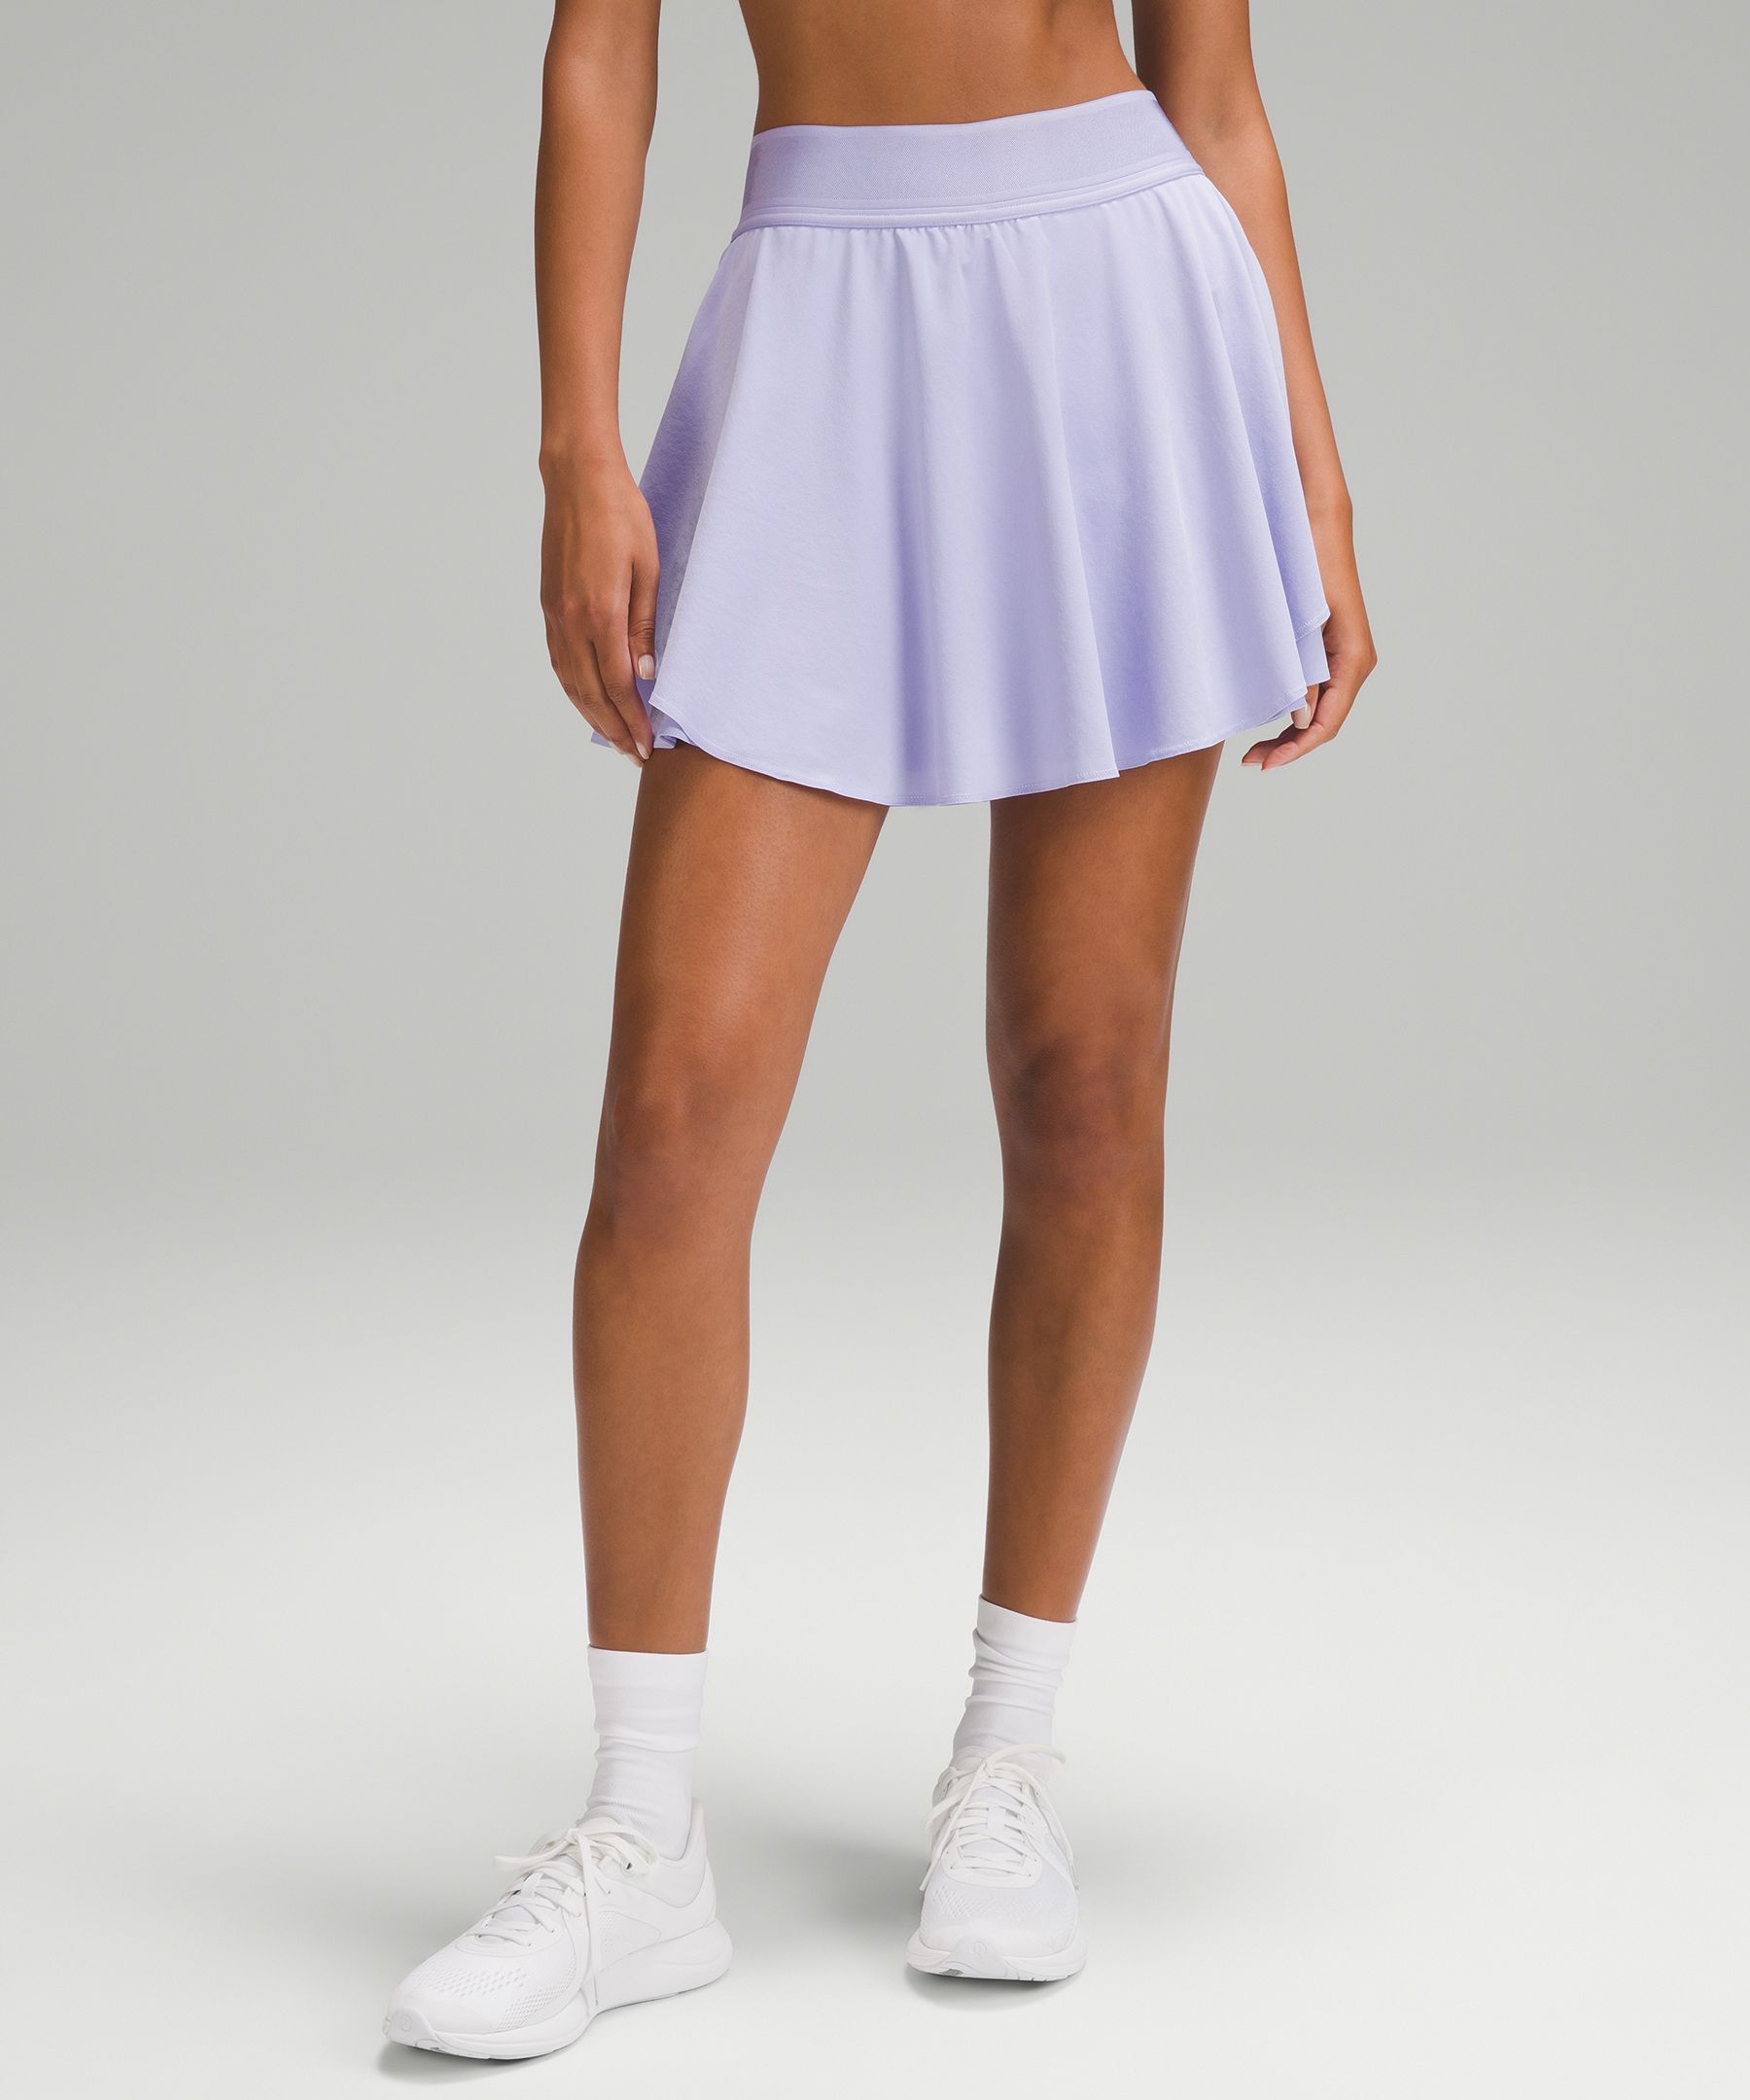 Lululemon court rival High Rise Tennis Skirt strawberry milkshake Regular  Size 0